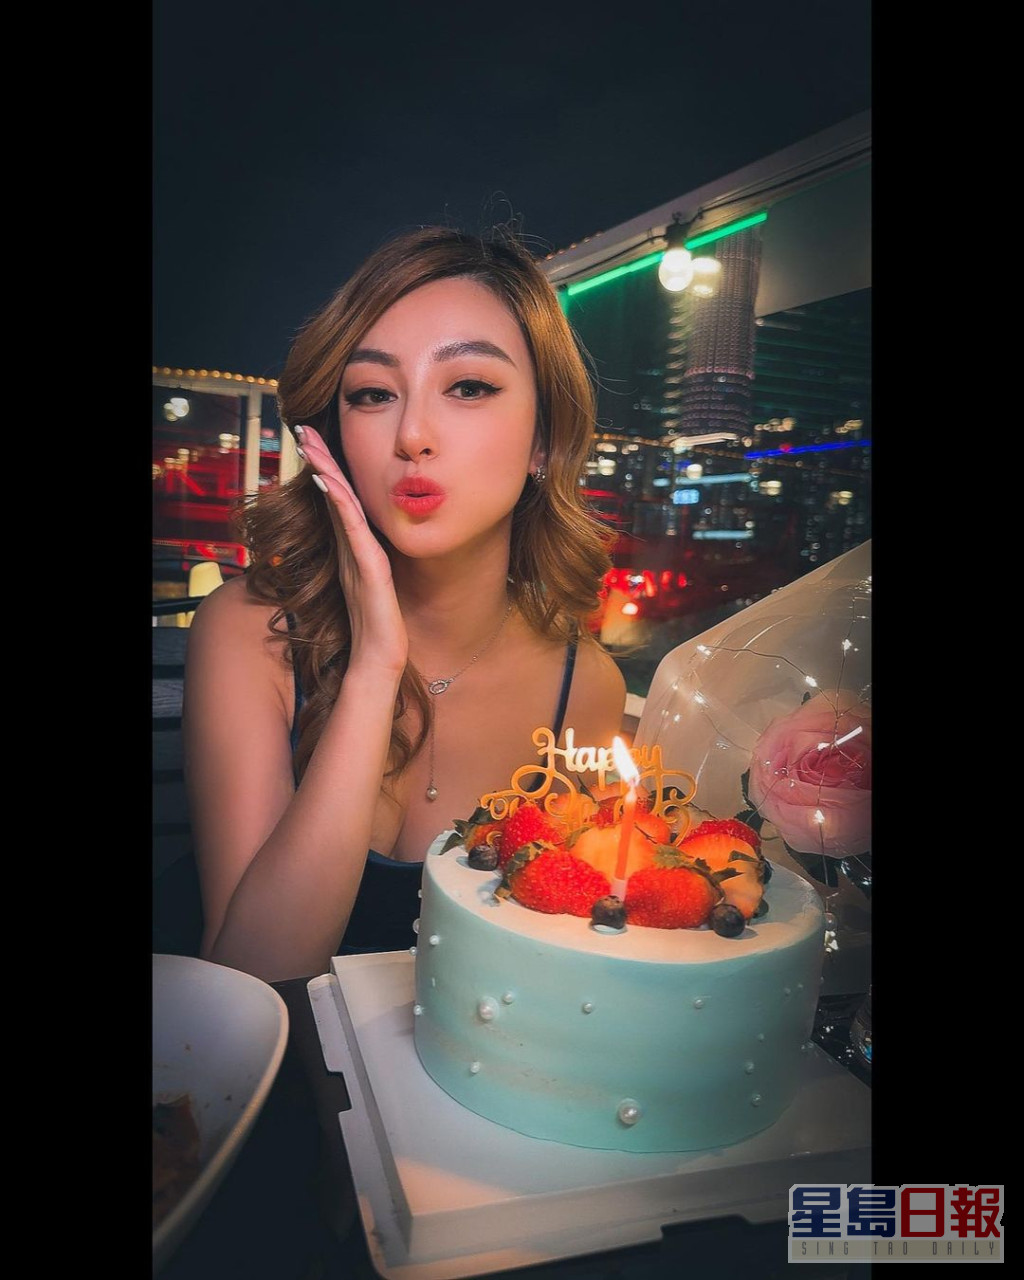 許子萱在今年情人節剛過26歲生日。